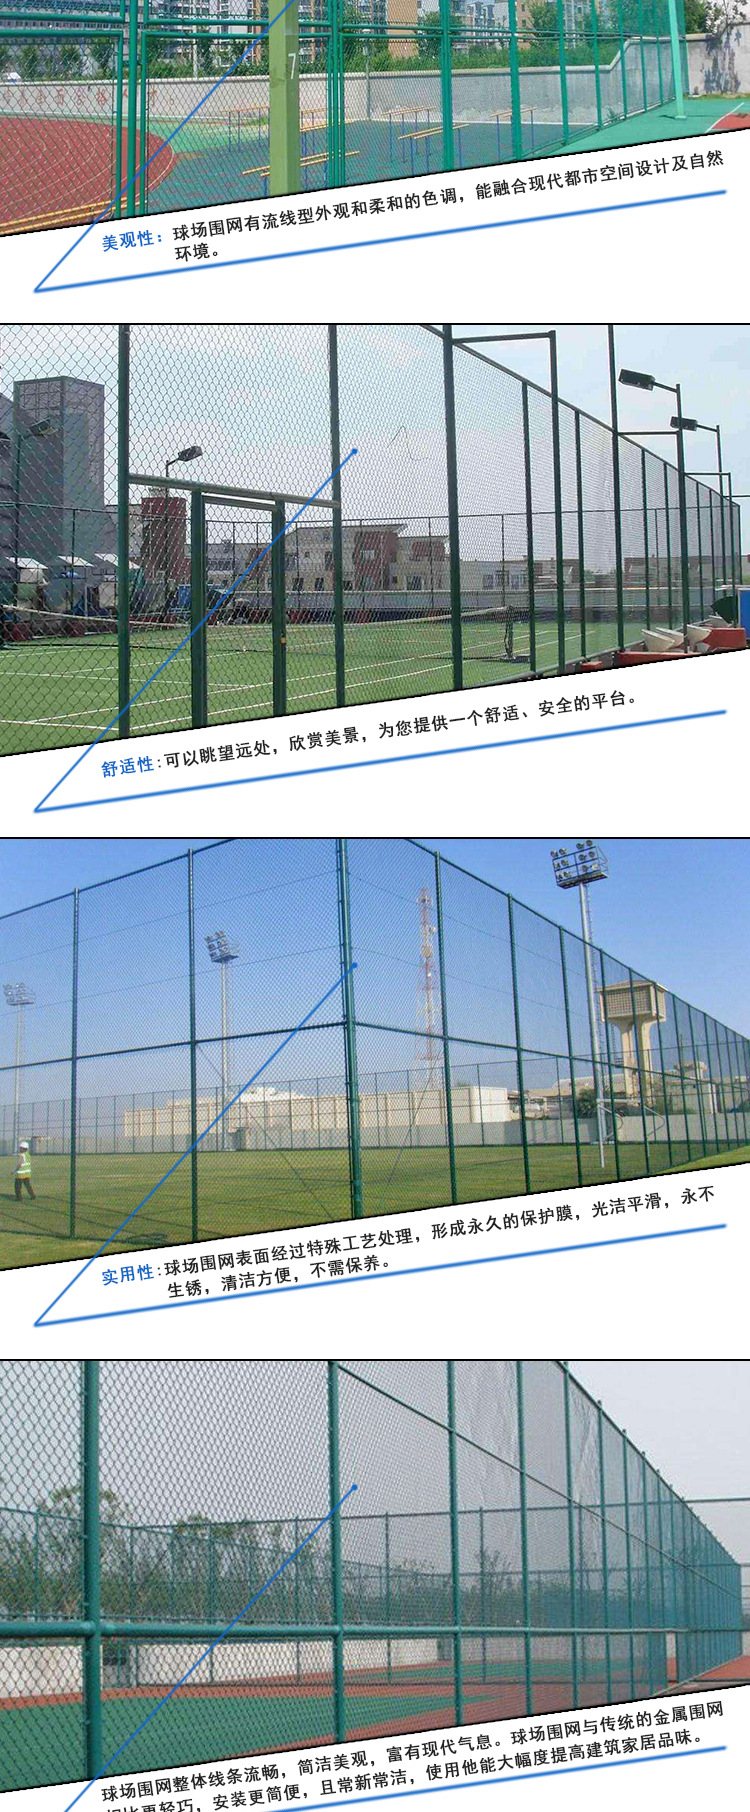 新款热销 绿色体育场球场围网|学校操场防护栏球场围网示例图2